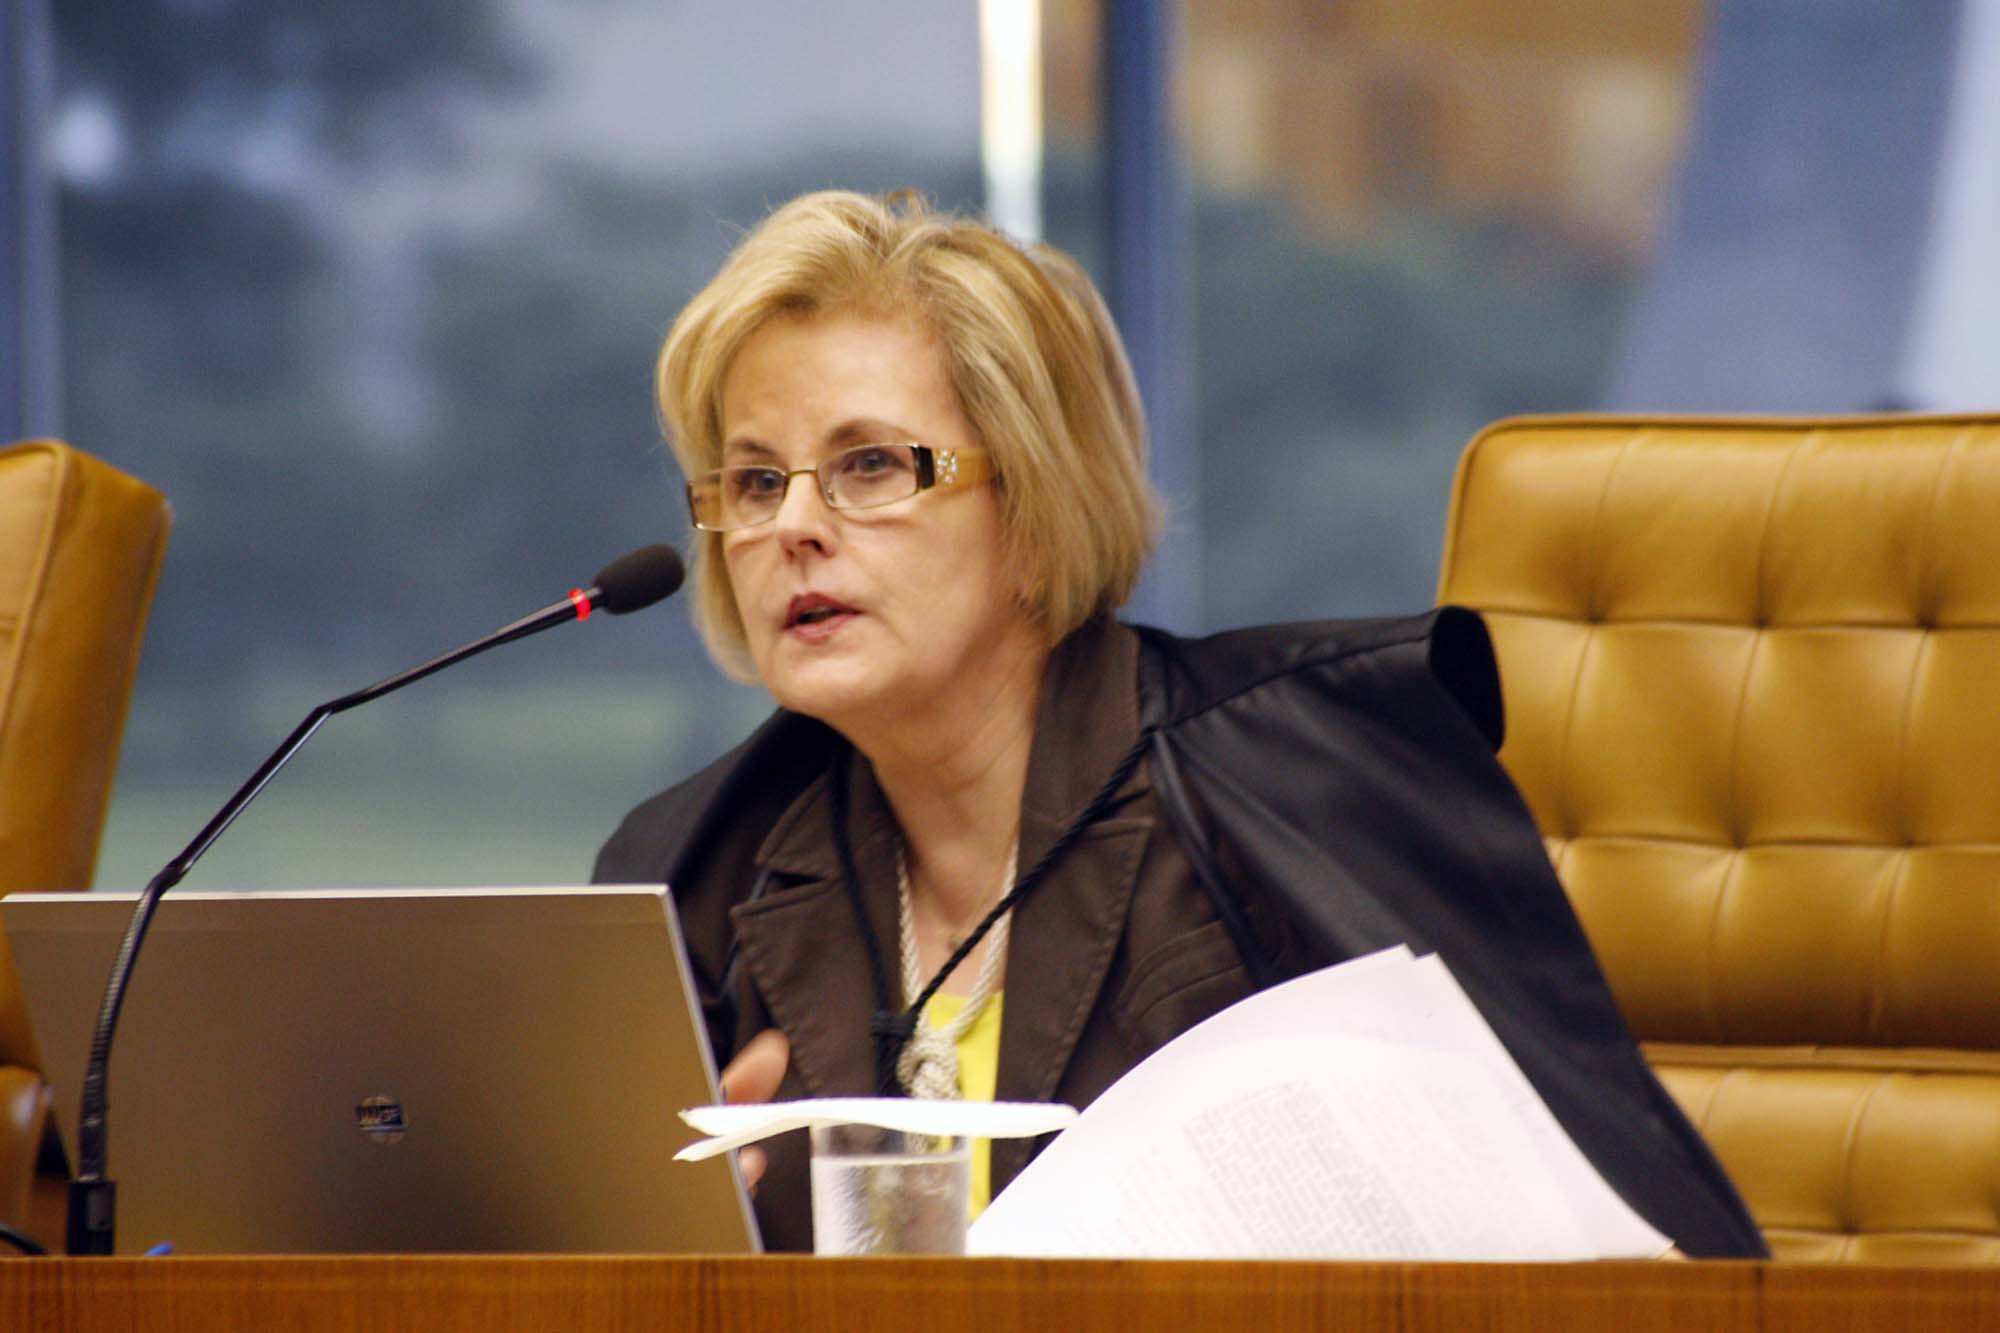 Ministra Rosa Weber agora é efetiva da Corte Eleitoral (Foto: Reprodução)